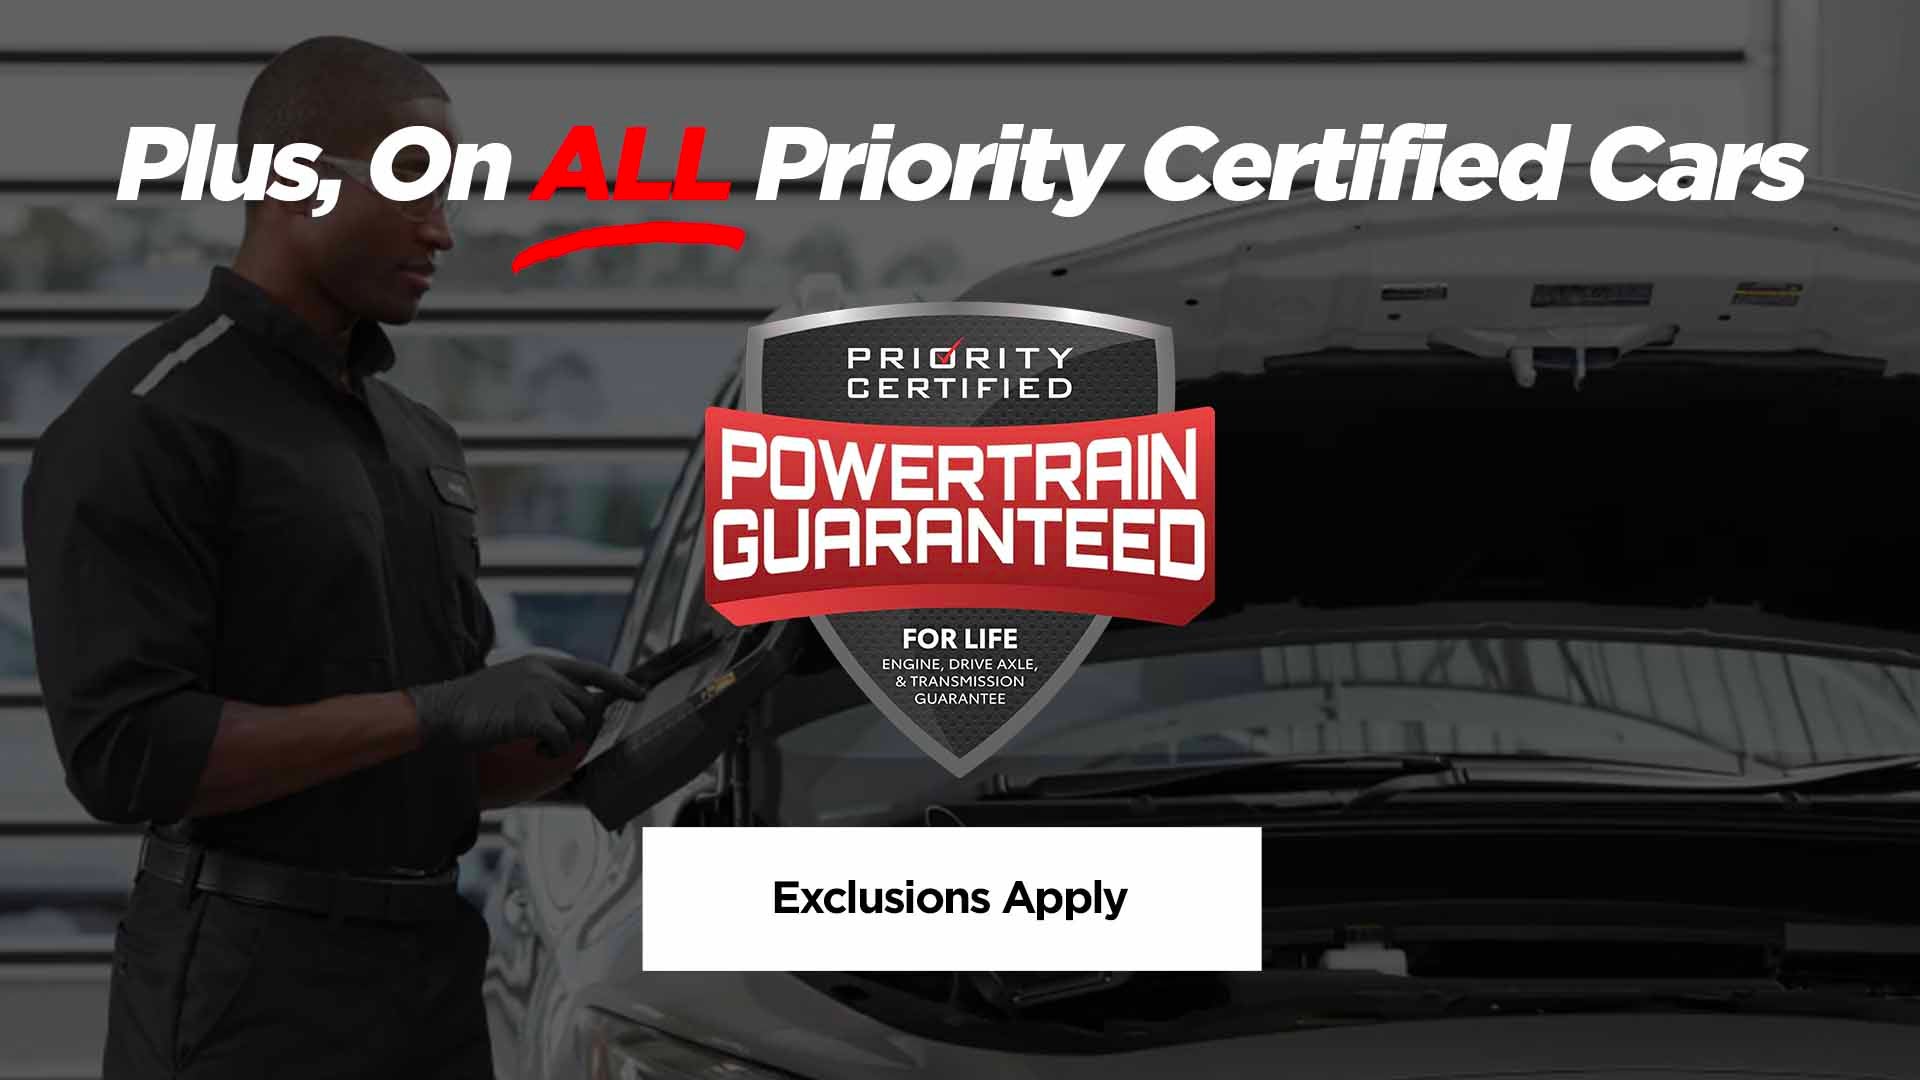 Priority Toyota Chesapeake in Chesapeake VA, Powertrain Guaranteed on Priority Certified Cars*